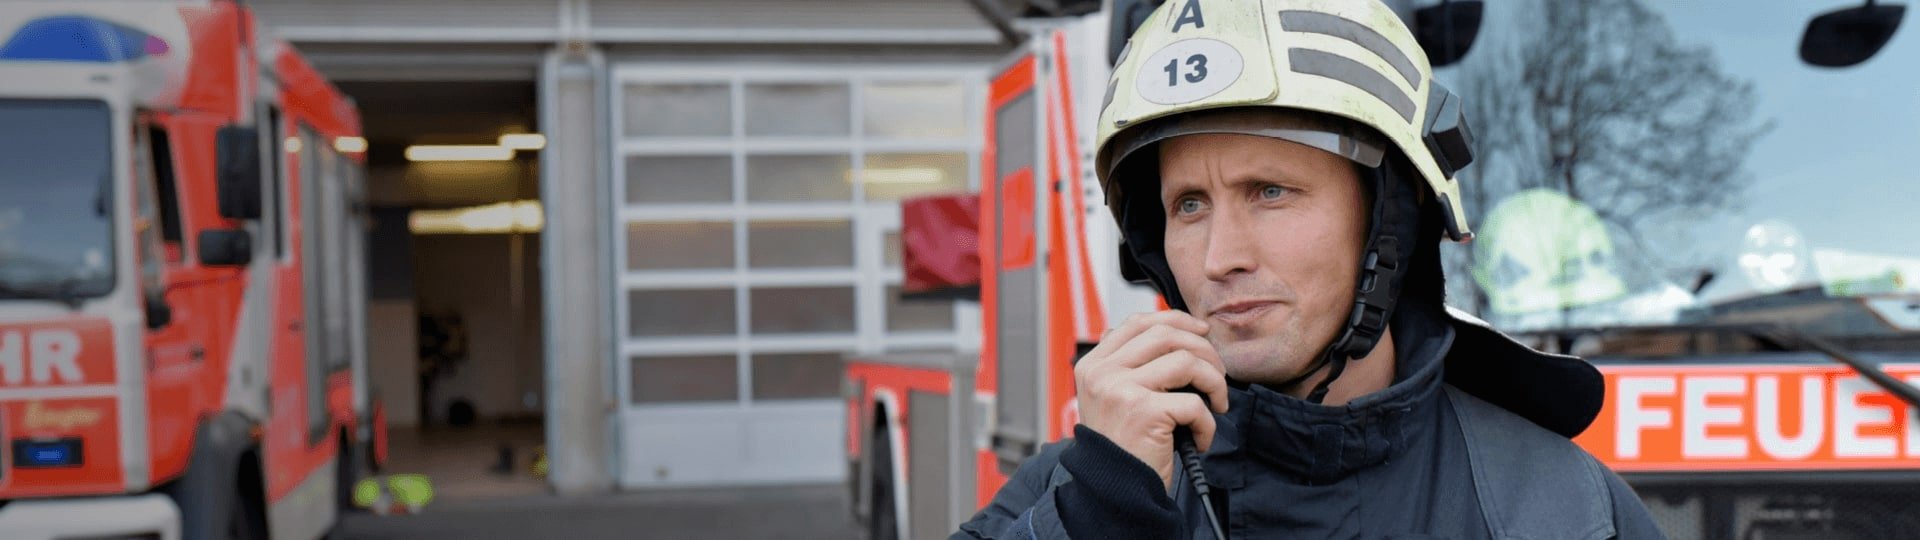 Private Krankenversicherung für die Feuerwehr | DBV Rostock Hoppe & Waskewitz oHG